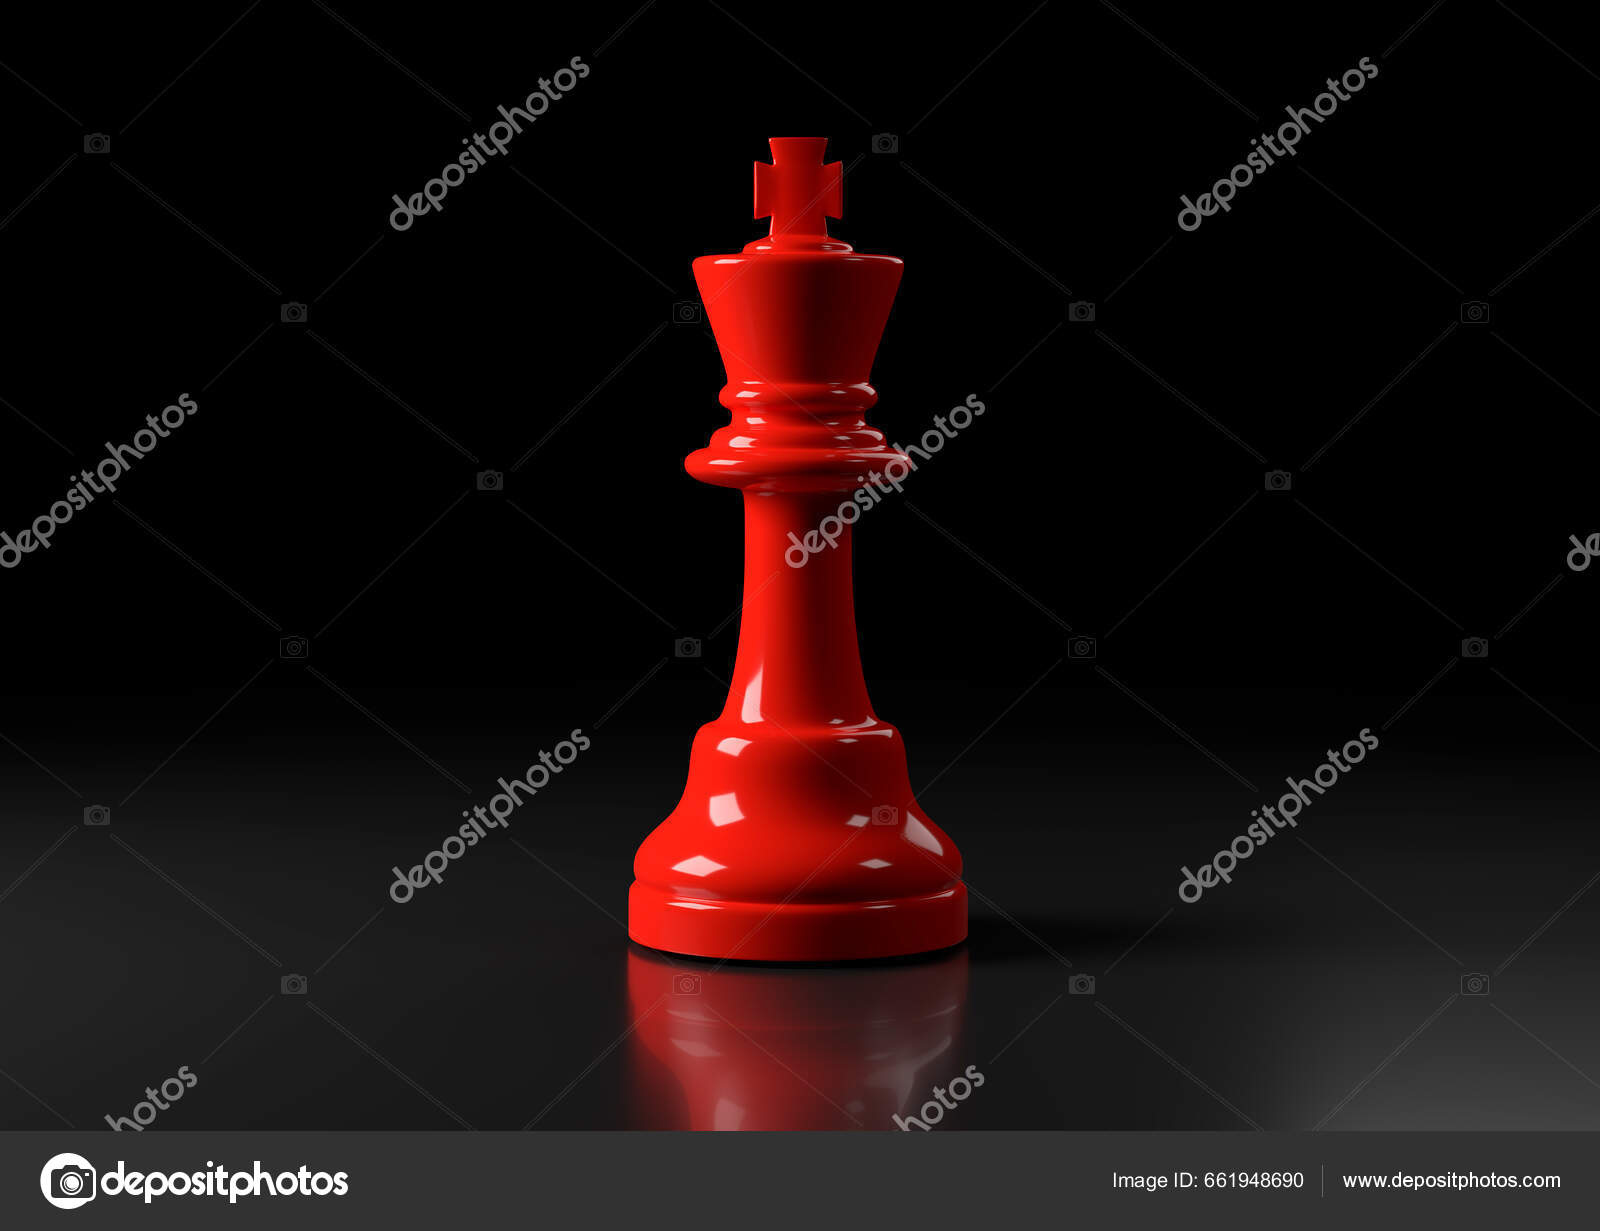 Jogo de estratégia de xadrez figuras de jogo branco e preto ganhar